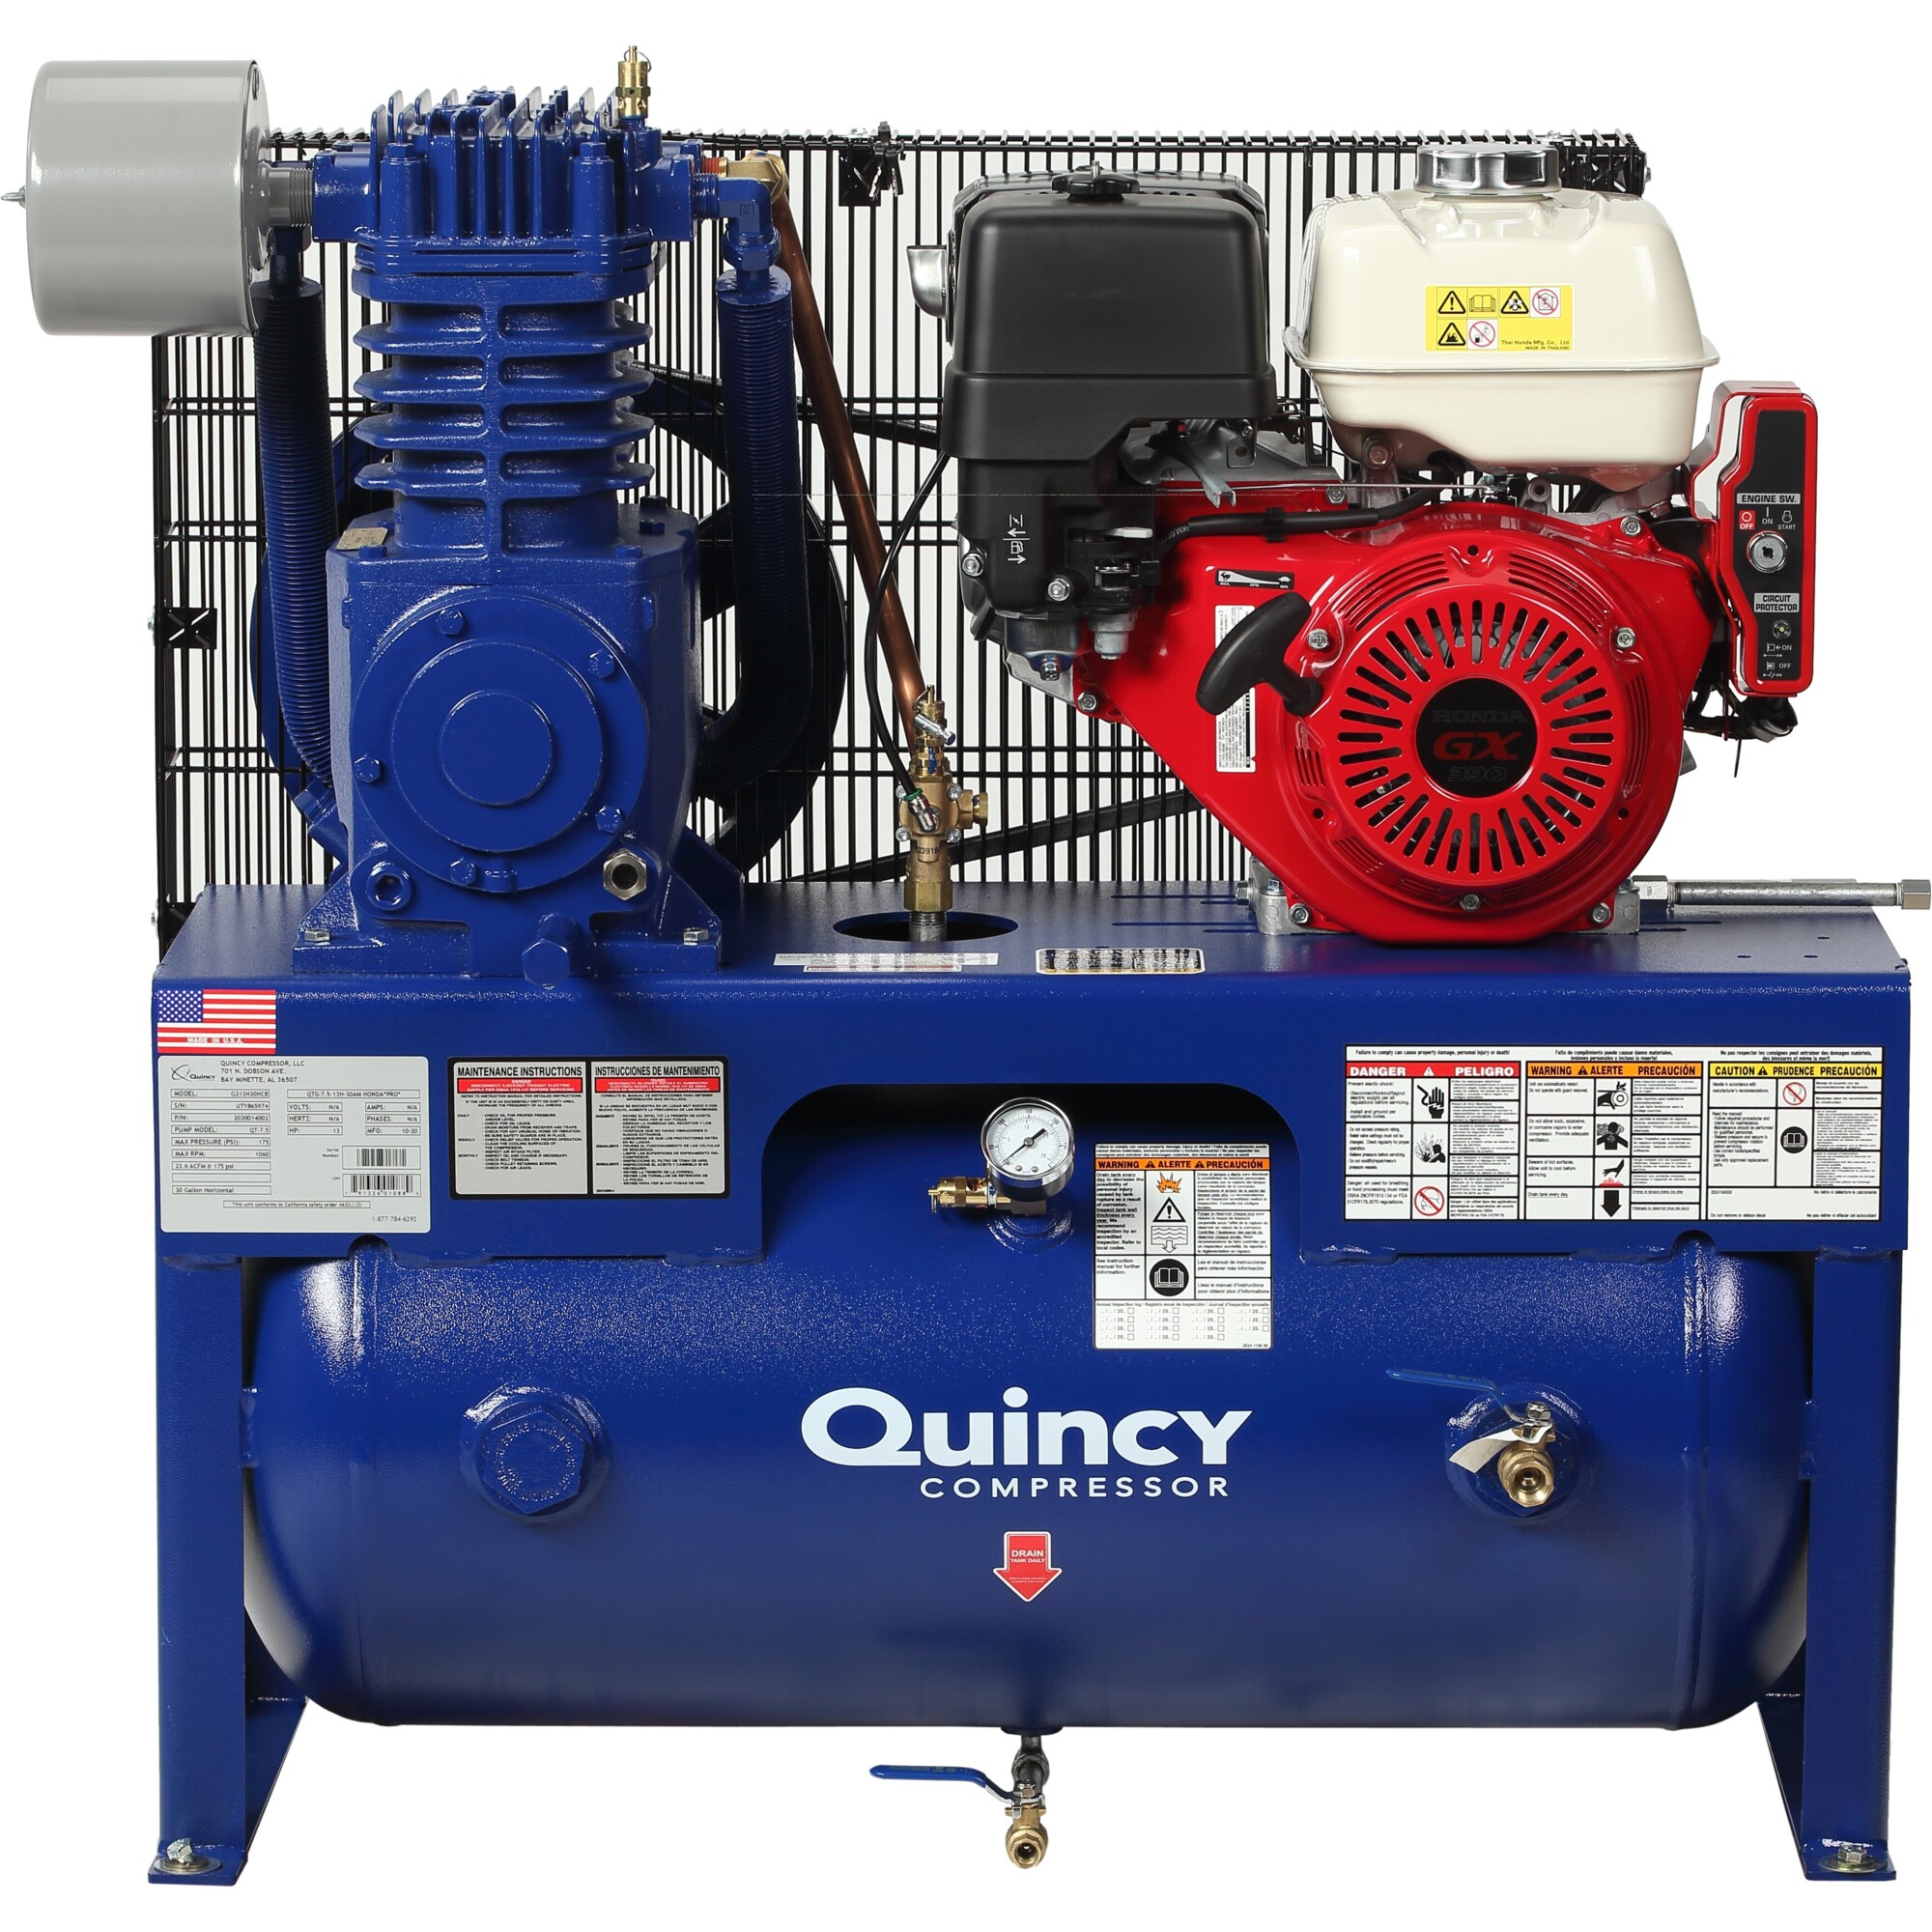 Quincy Compressor 2020040970